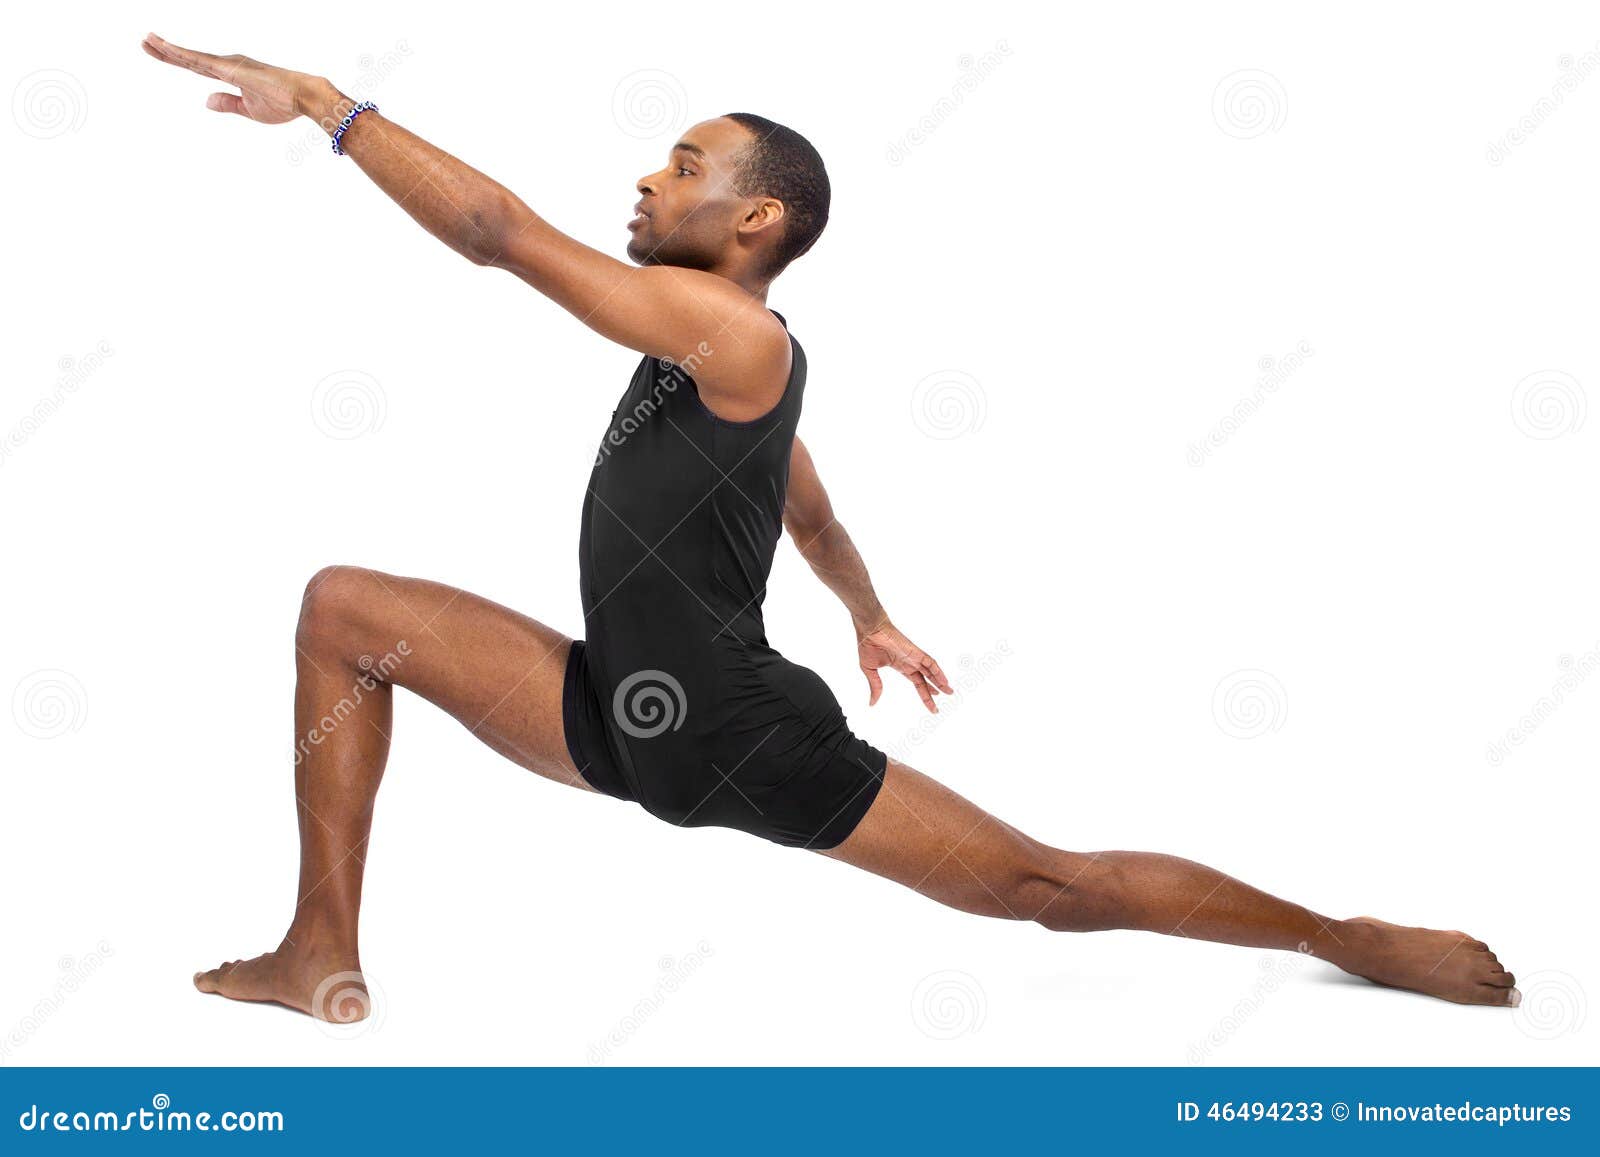 ballet flexibility